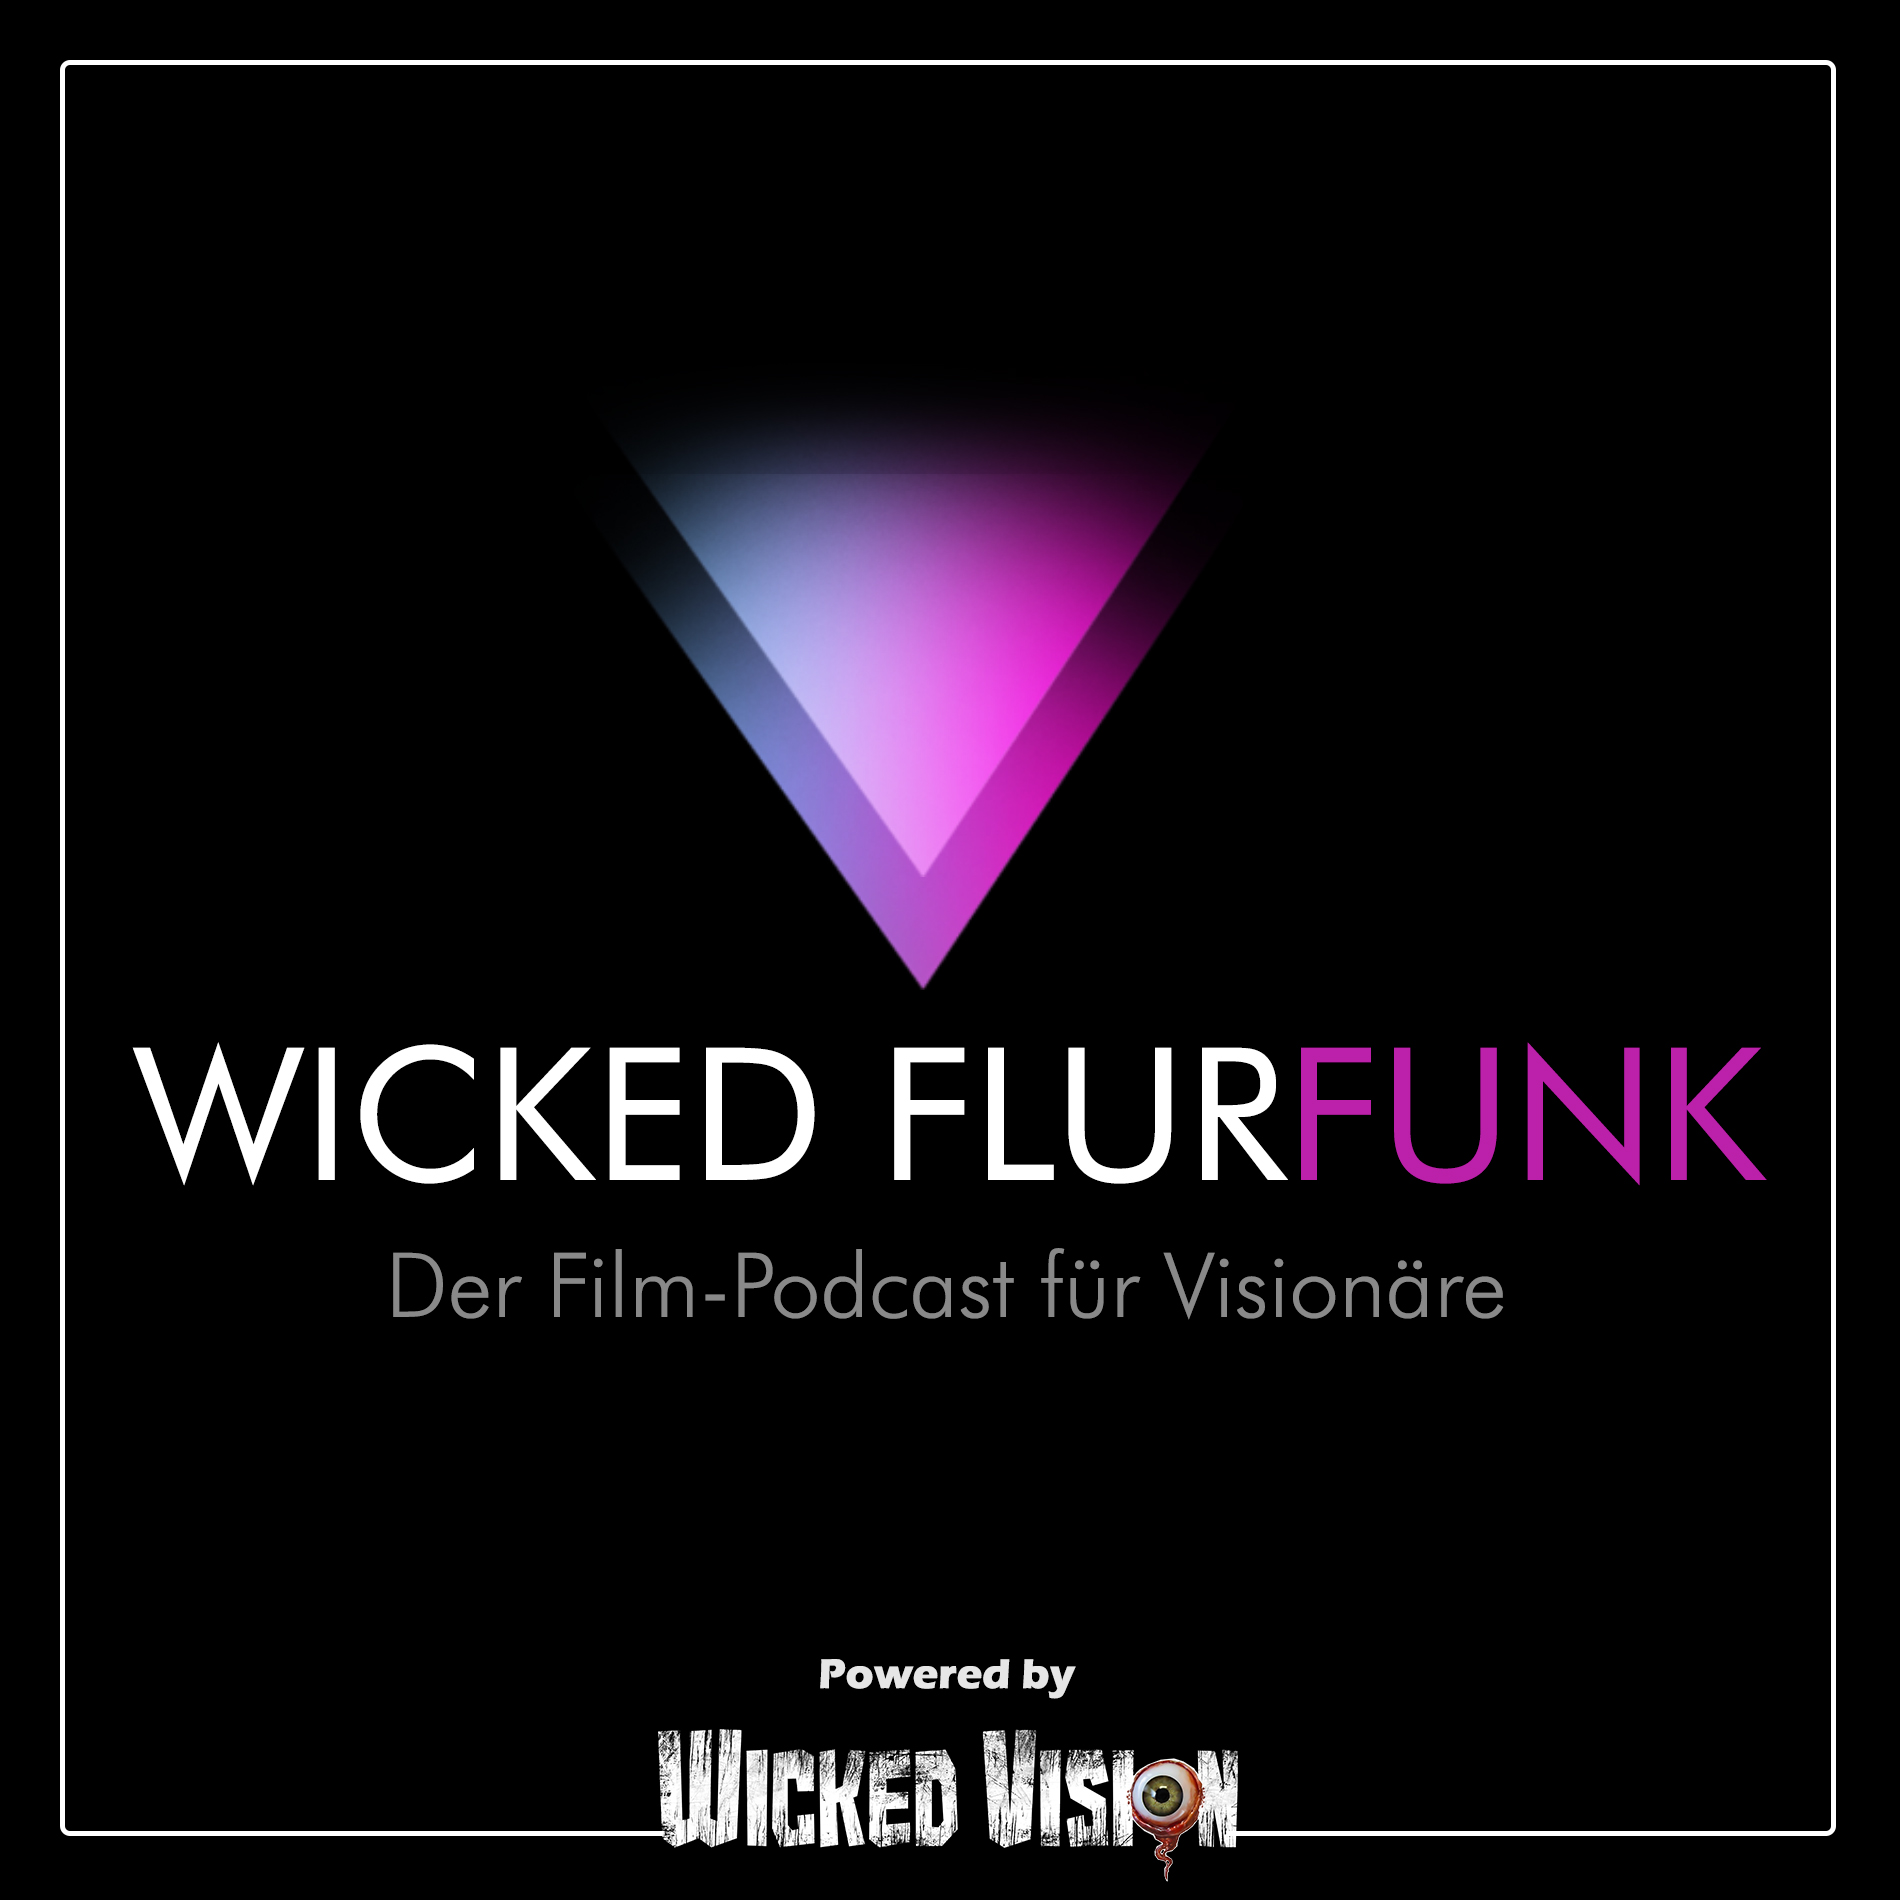 Wicked Flurfunk – Der Film-Podcast für Visionäre